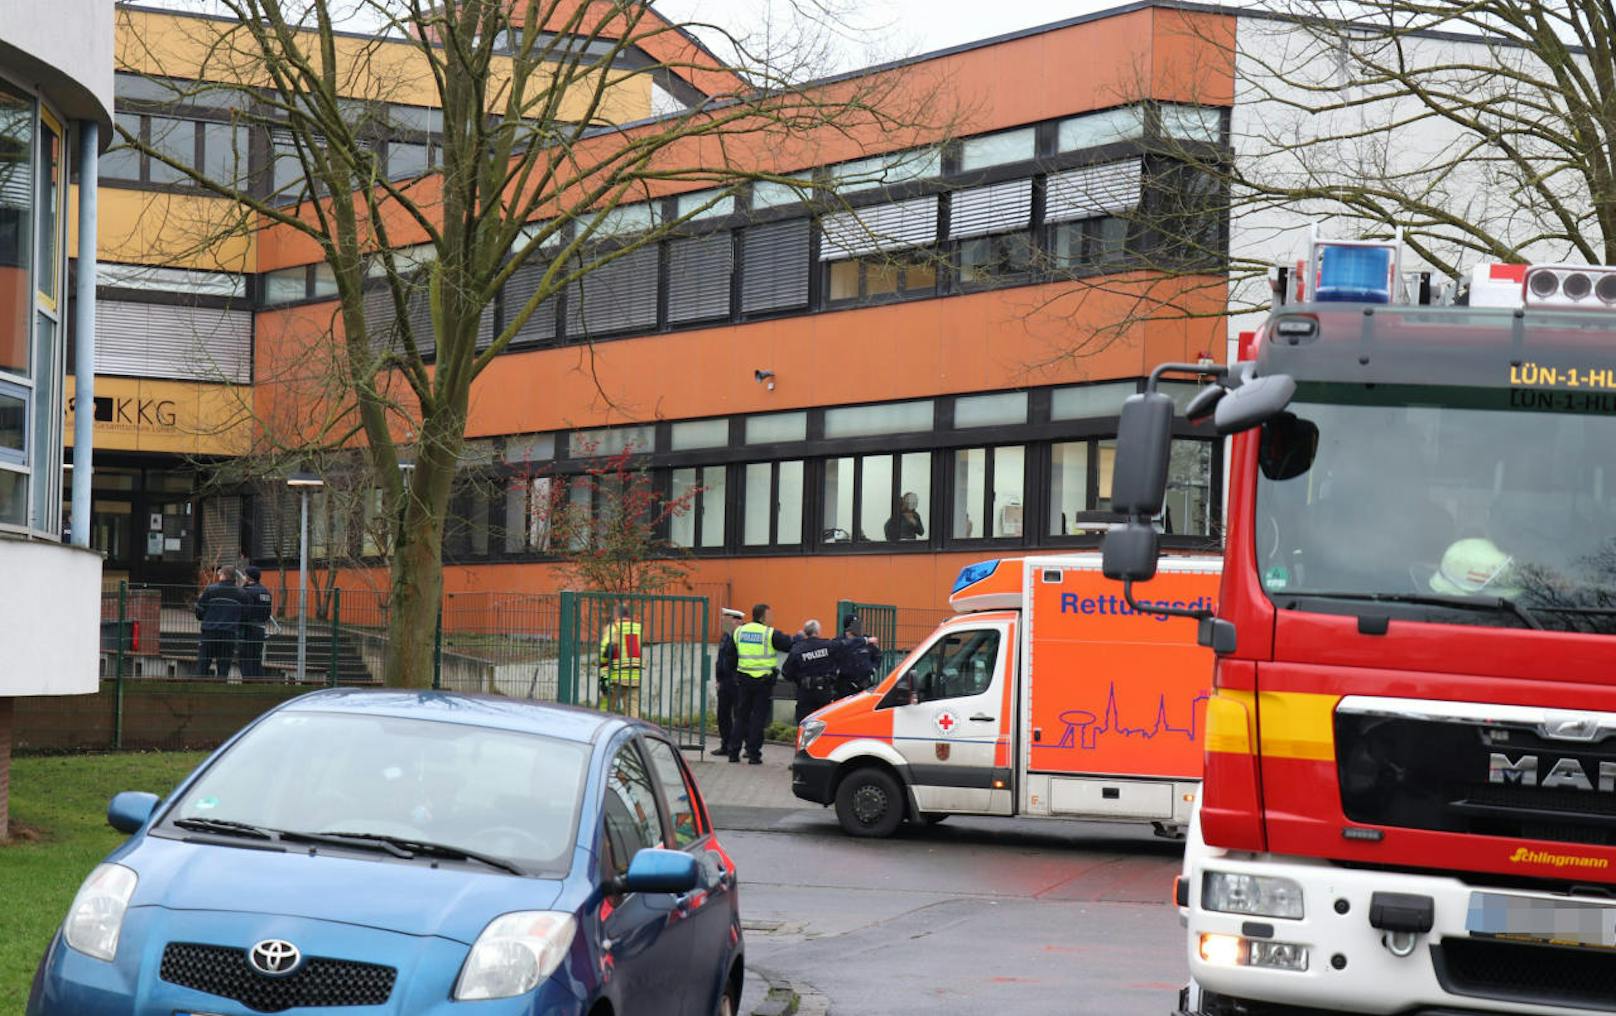 Man habe versucht, das Opfer (14) auf dem Schulgelände zu reanimieren, die Bemühungen waren aber vergeblich, so eine Sprecherin der Polizei Dortmund zur "Rheinischen Post".